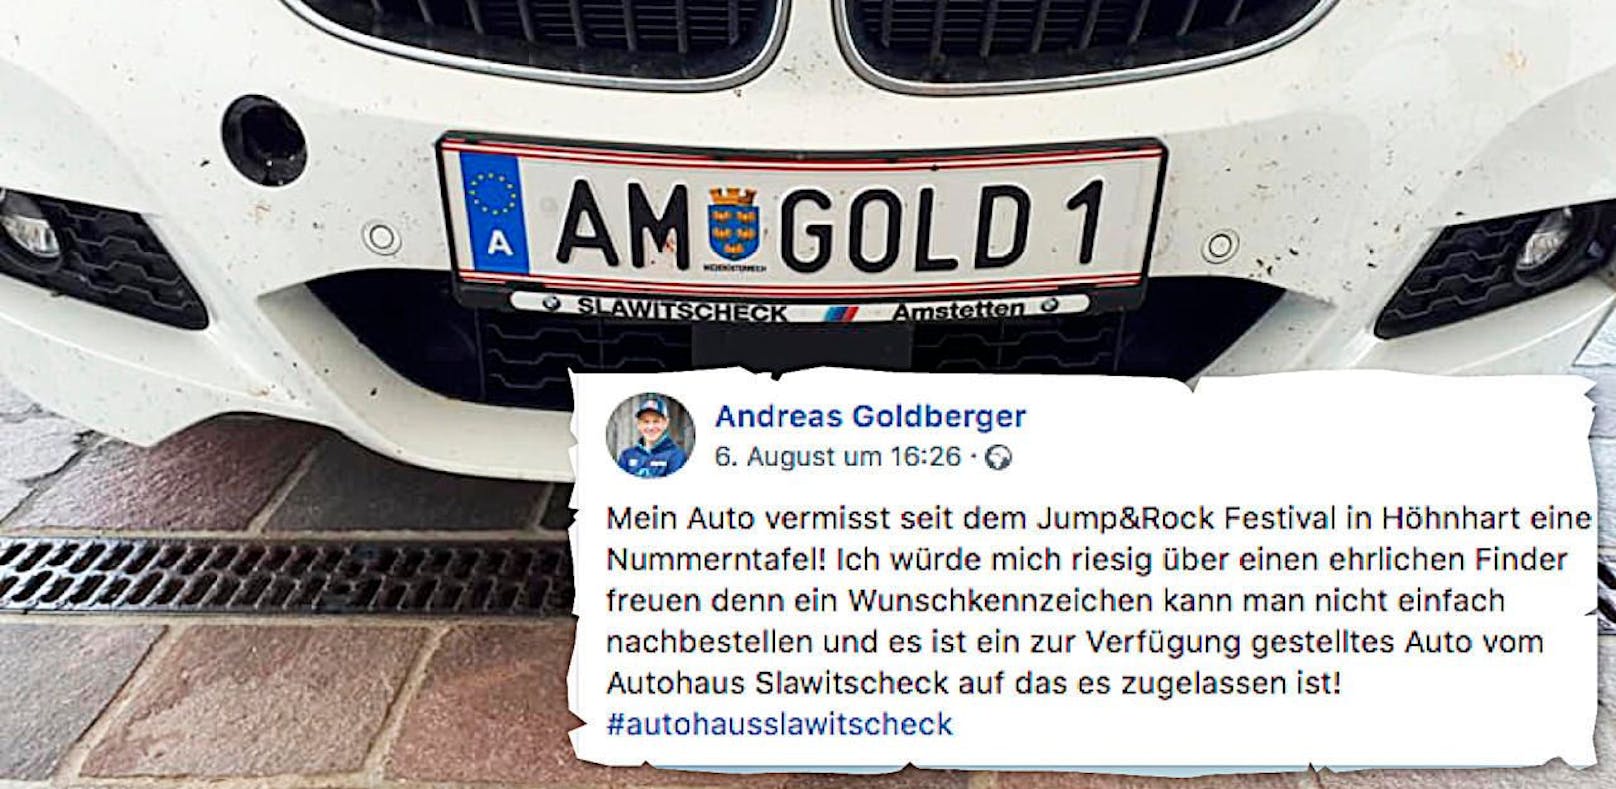 Andreas Goldberger wurde während eines Festivals sein Wunschkennzeichen gestohlen.